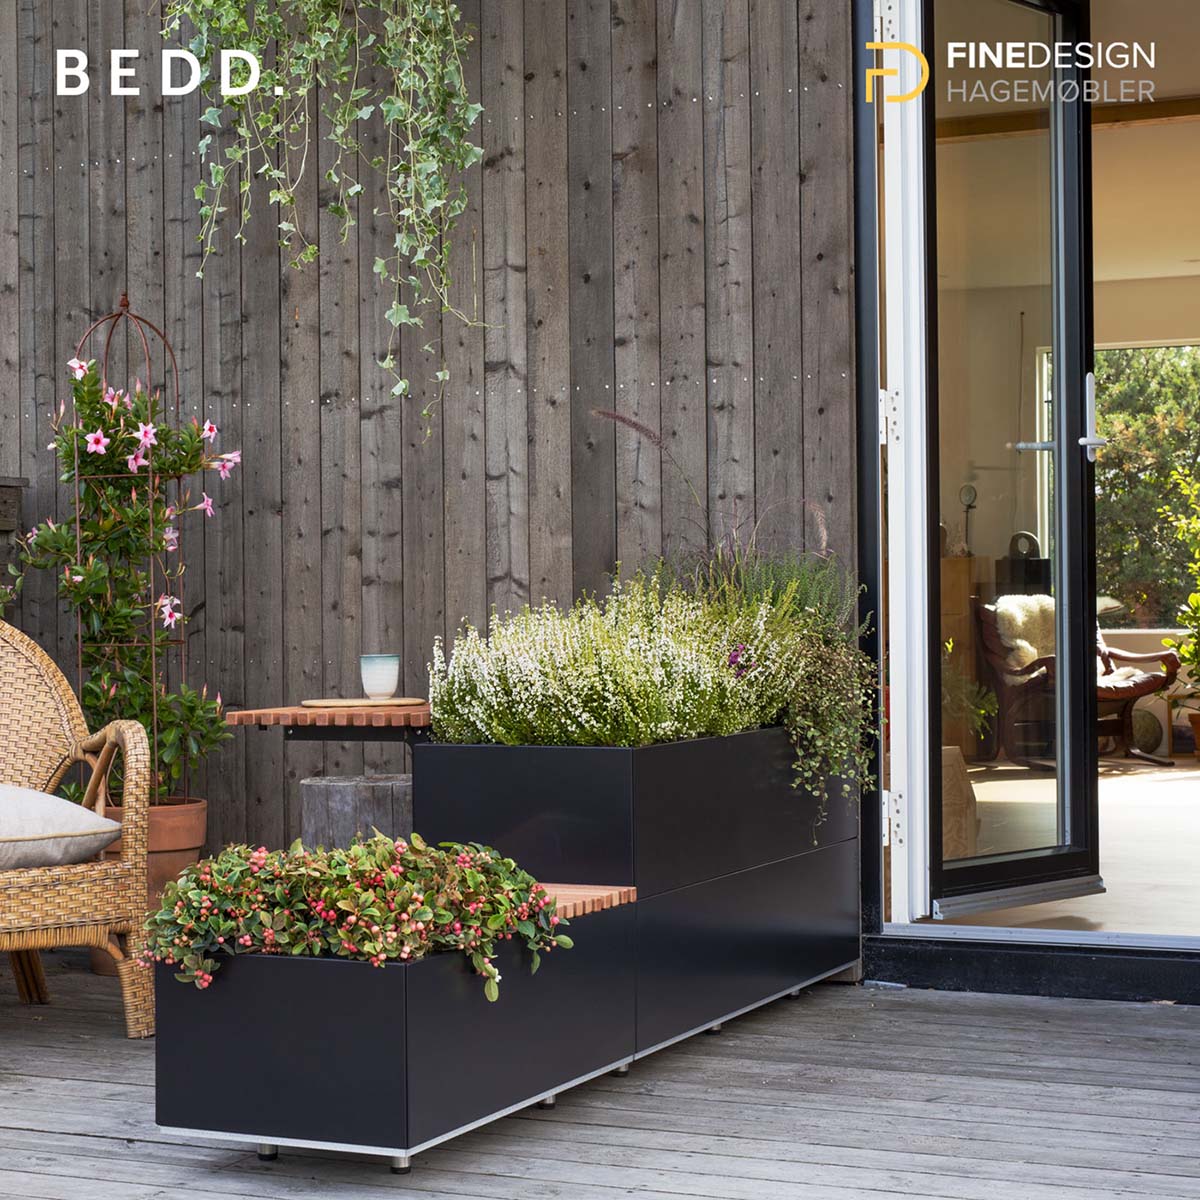 Sort BEDD plantekasse i to høyder med bord på veranda ved åpen dør